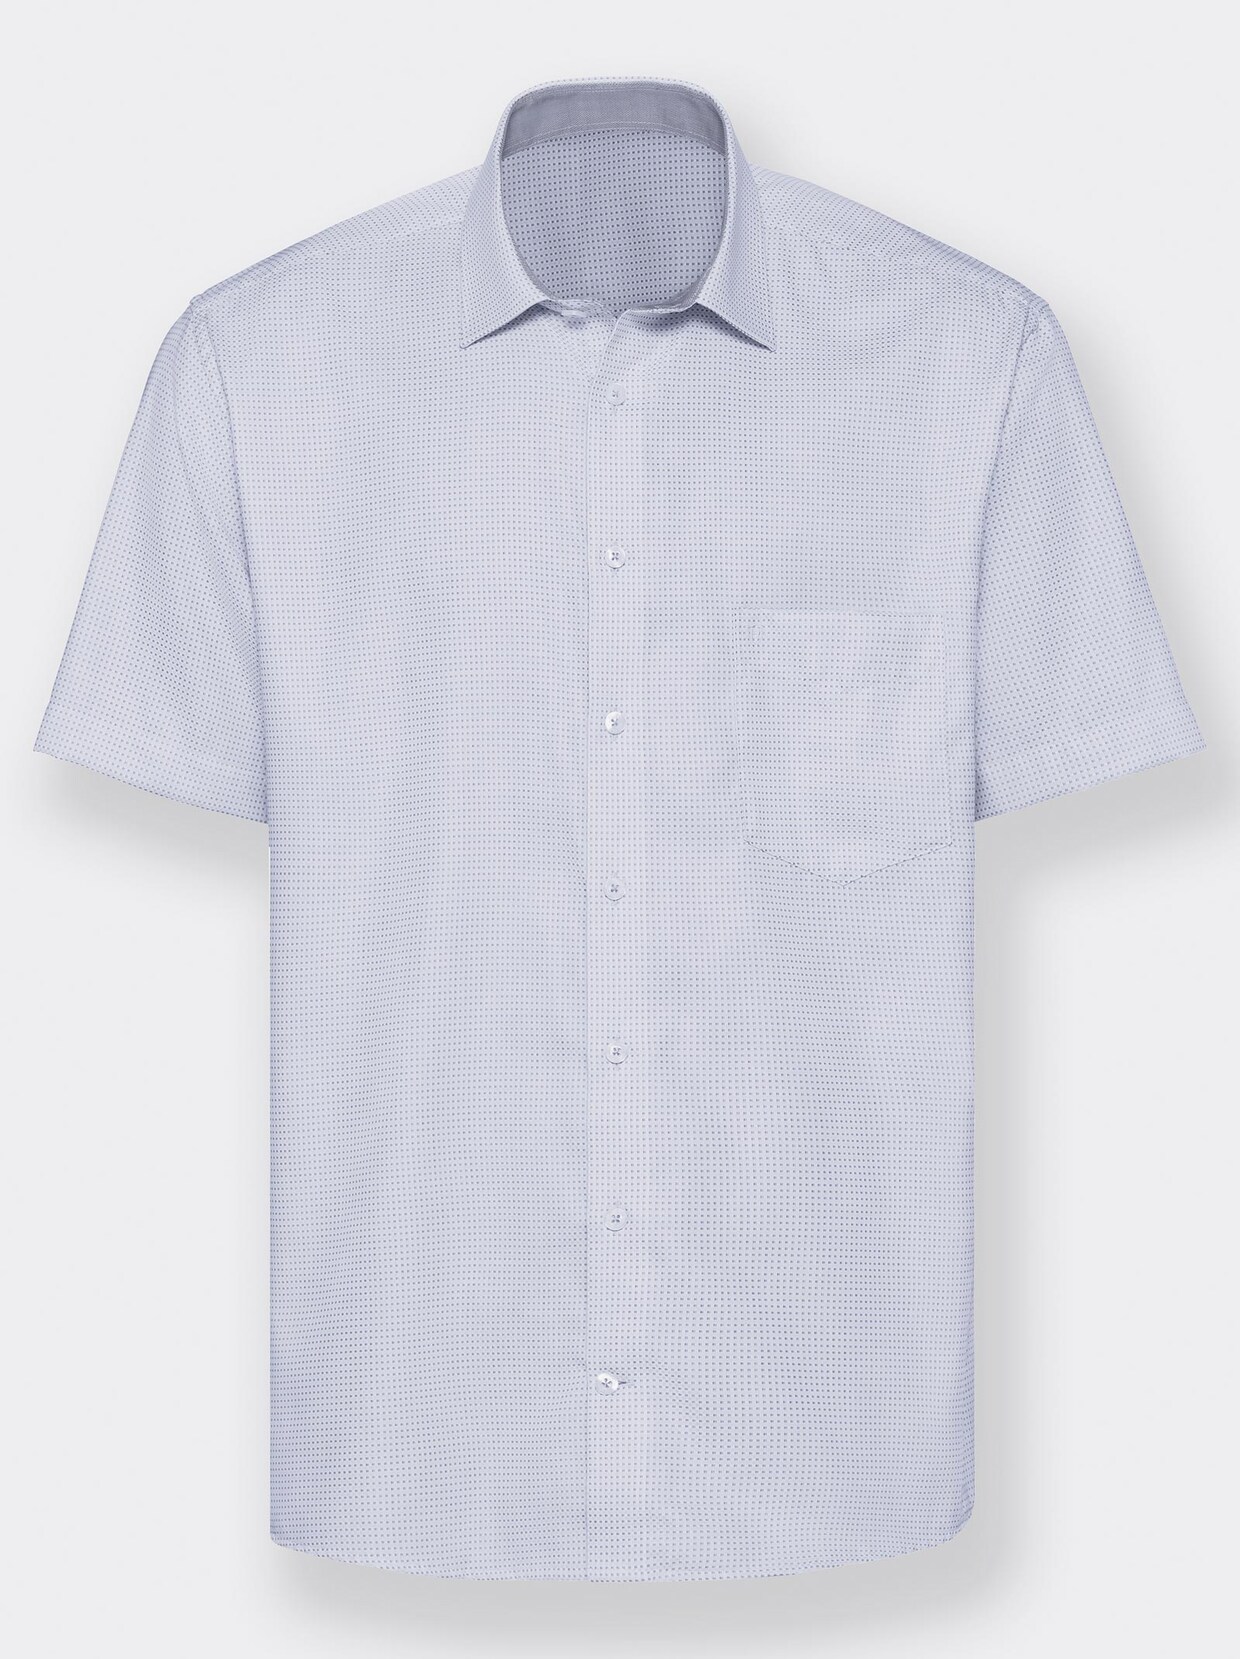 Hatico hemden - Die qualitativsten Hatico hemden verglichen